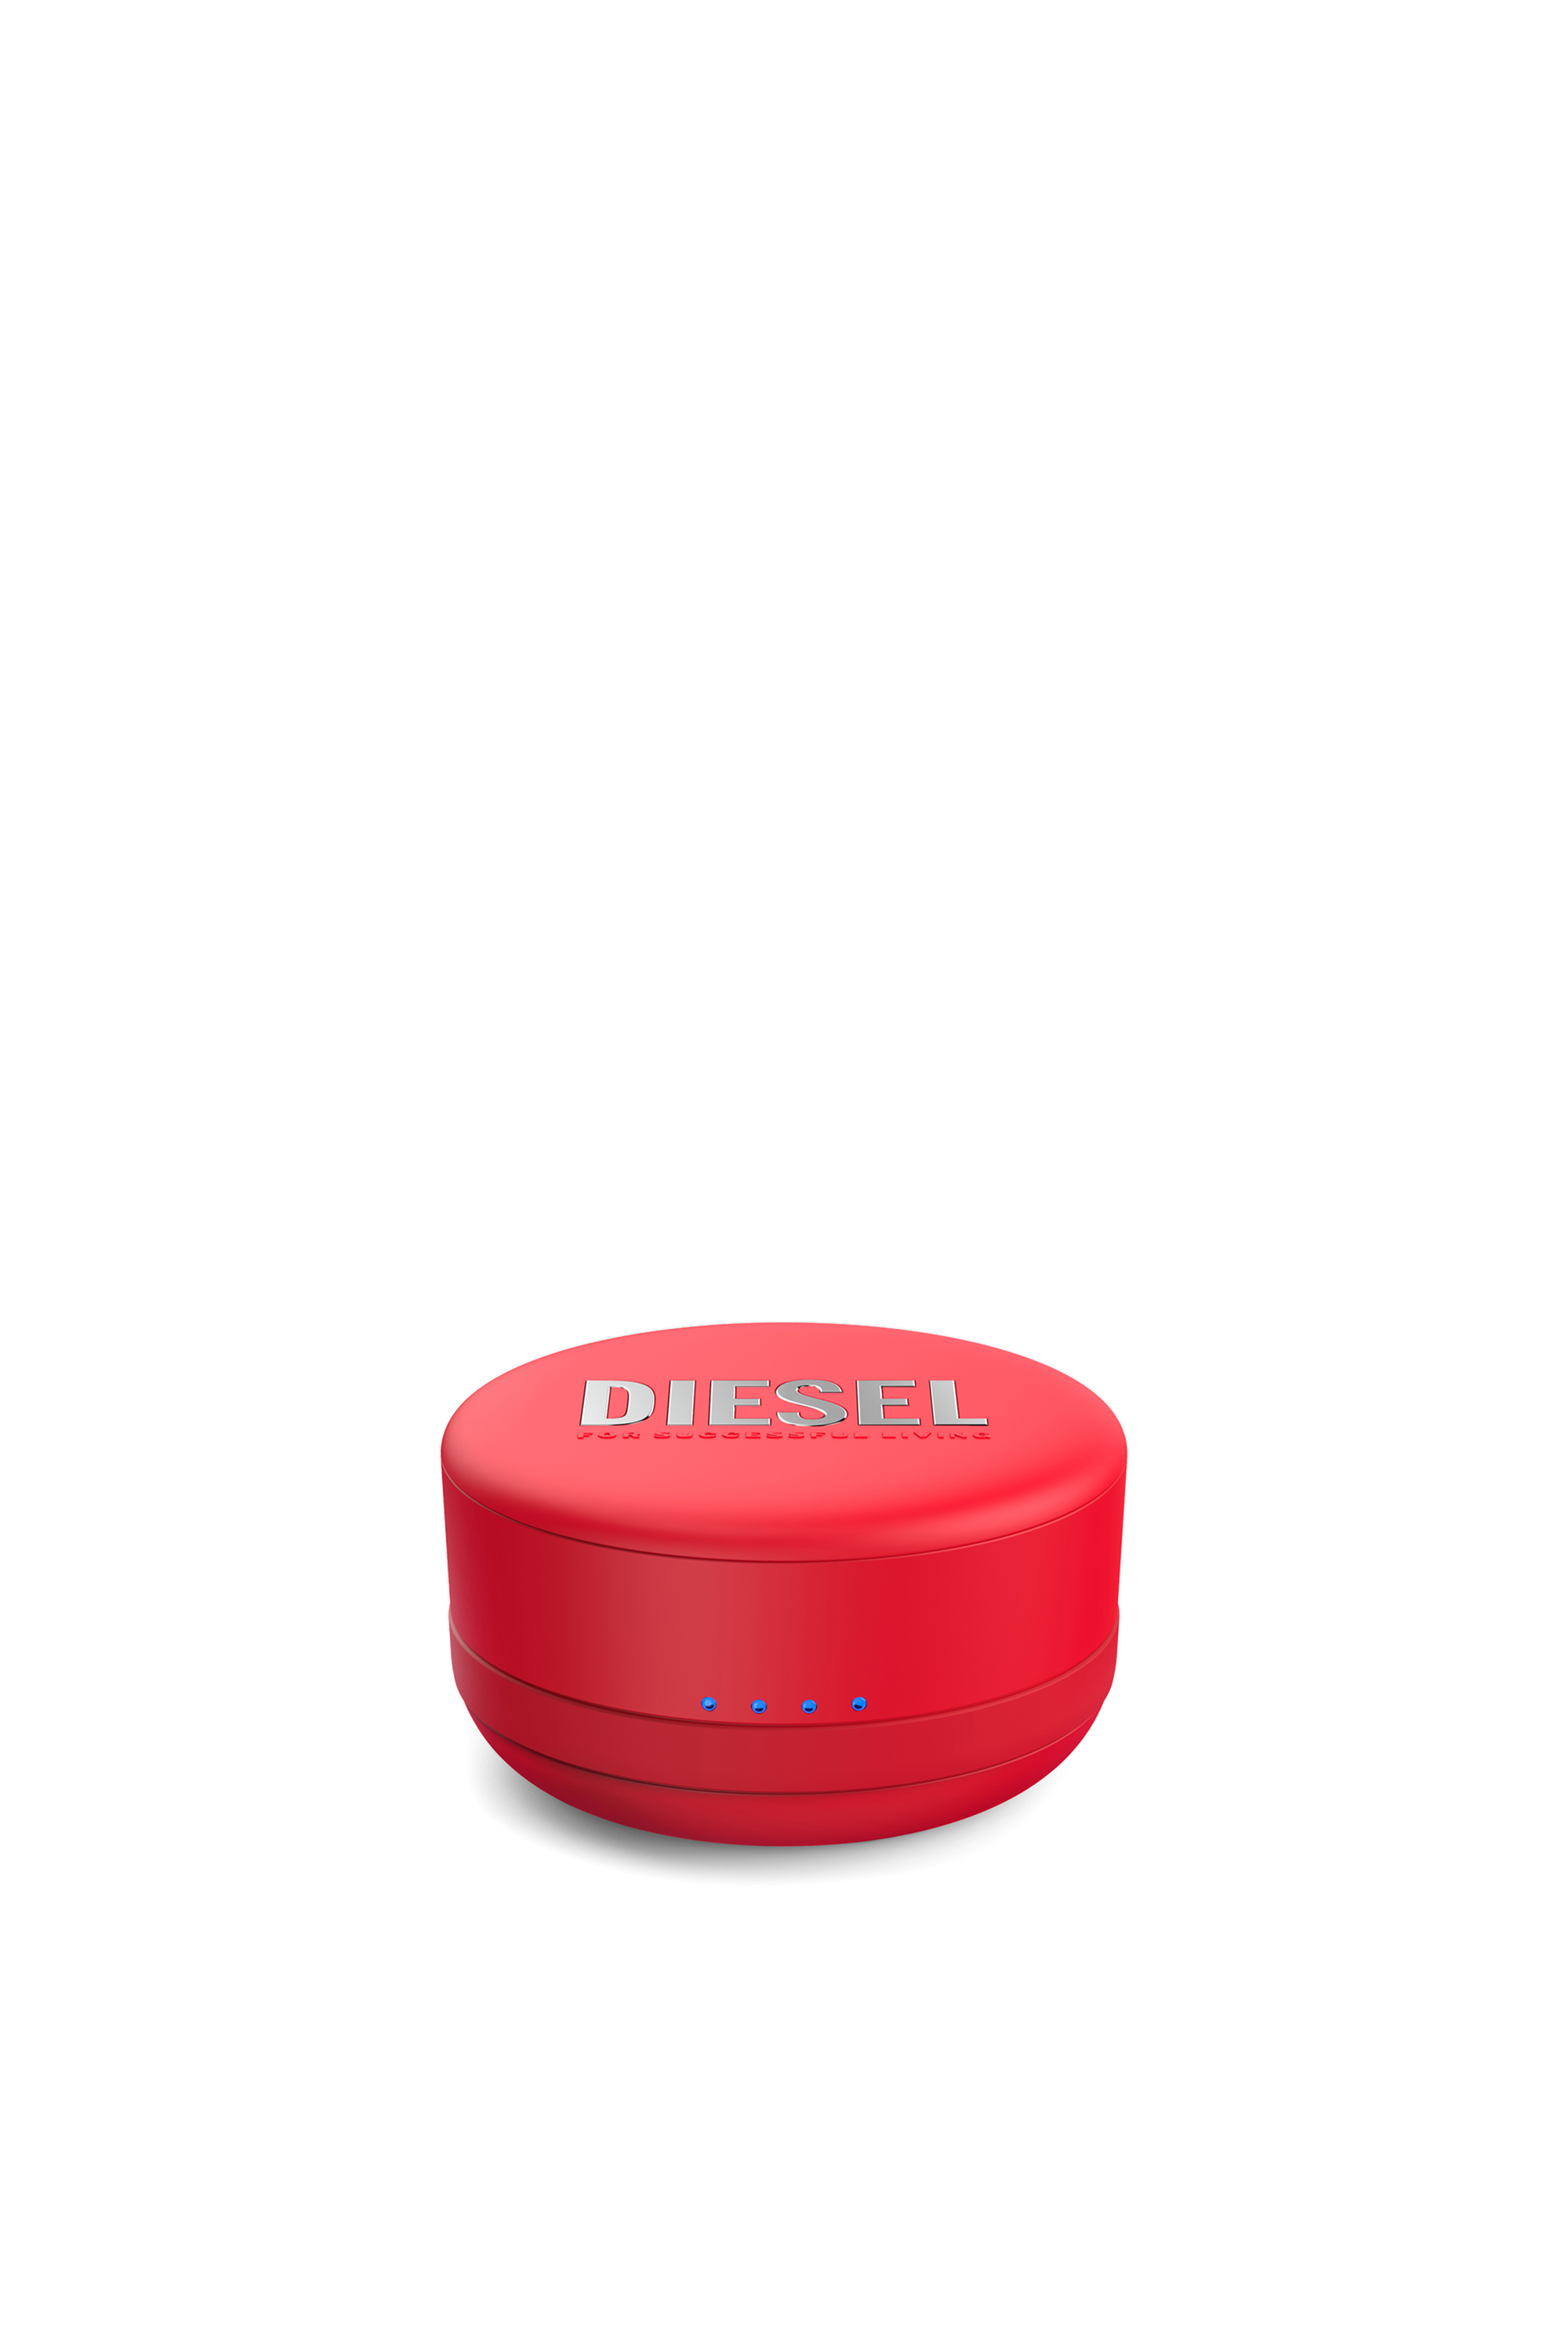 Diesel - 45476 TRUE WIRELESS, Rojo - Image 4